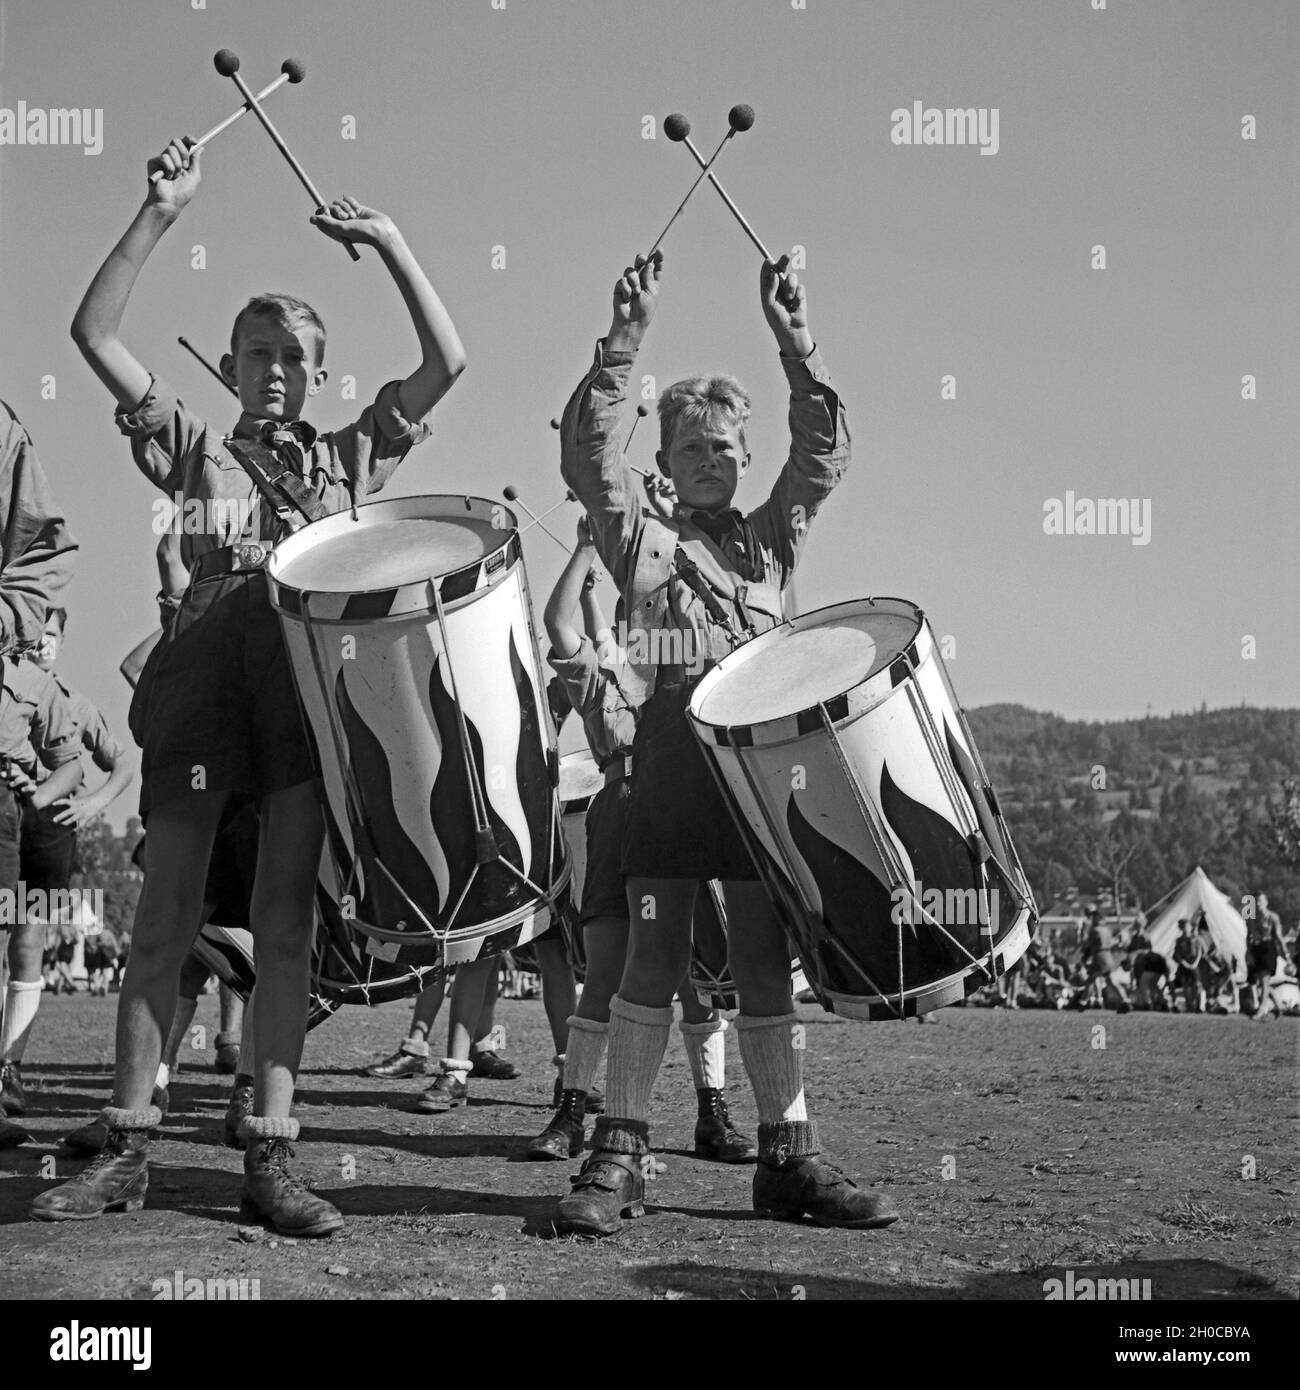 Jungen des Tromnmlercorps des Jungvolk Musikzuges geben den Takt Hitlerjugend im Lager, Österreich 1930er Jahre. Il batterista dei boys Jungvolk battendo i tamburi raduno a Hitler youth camp, Austria 1930s. Foto Stock